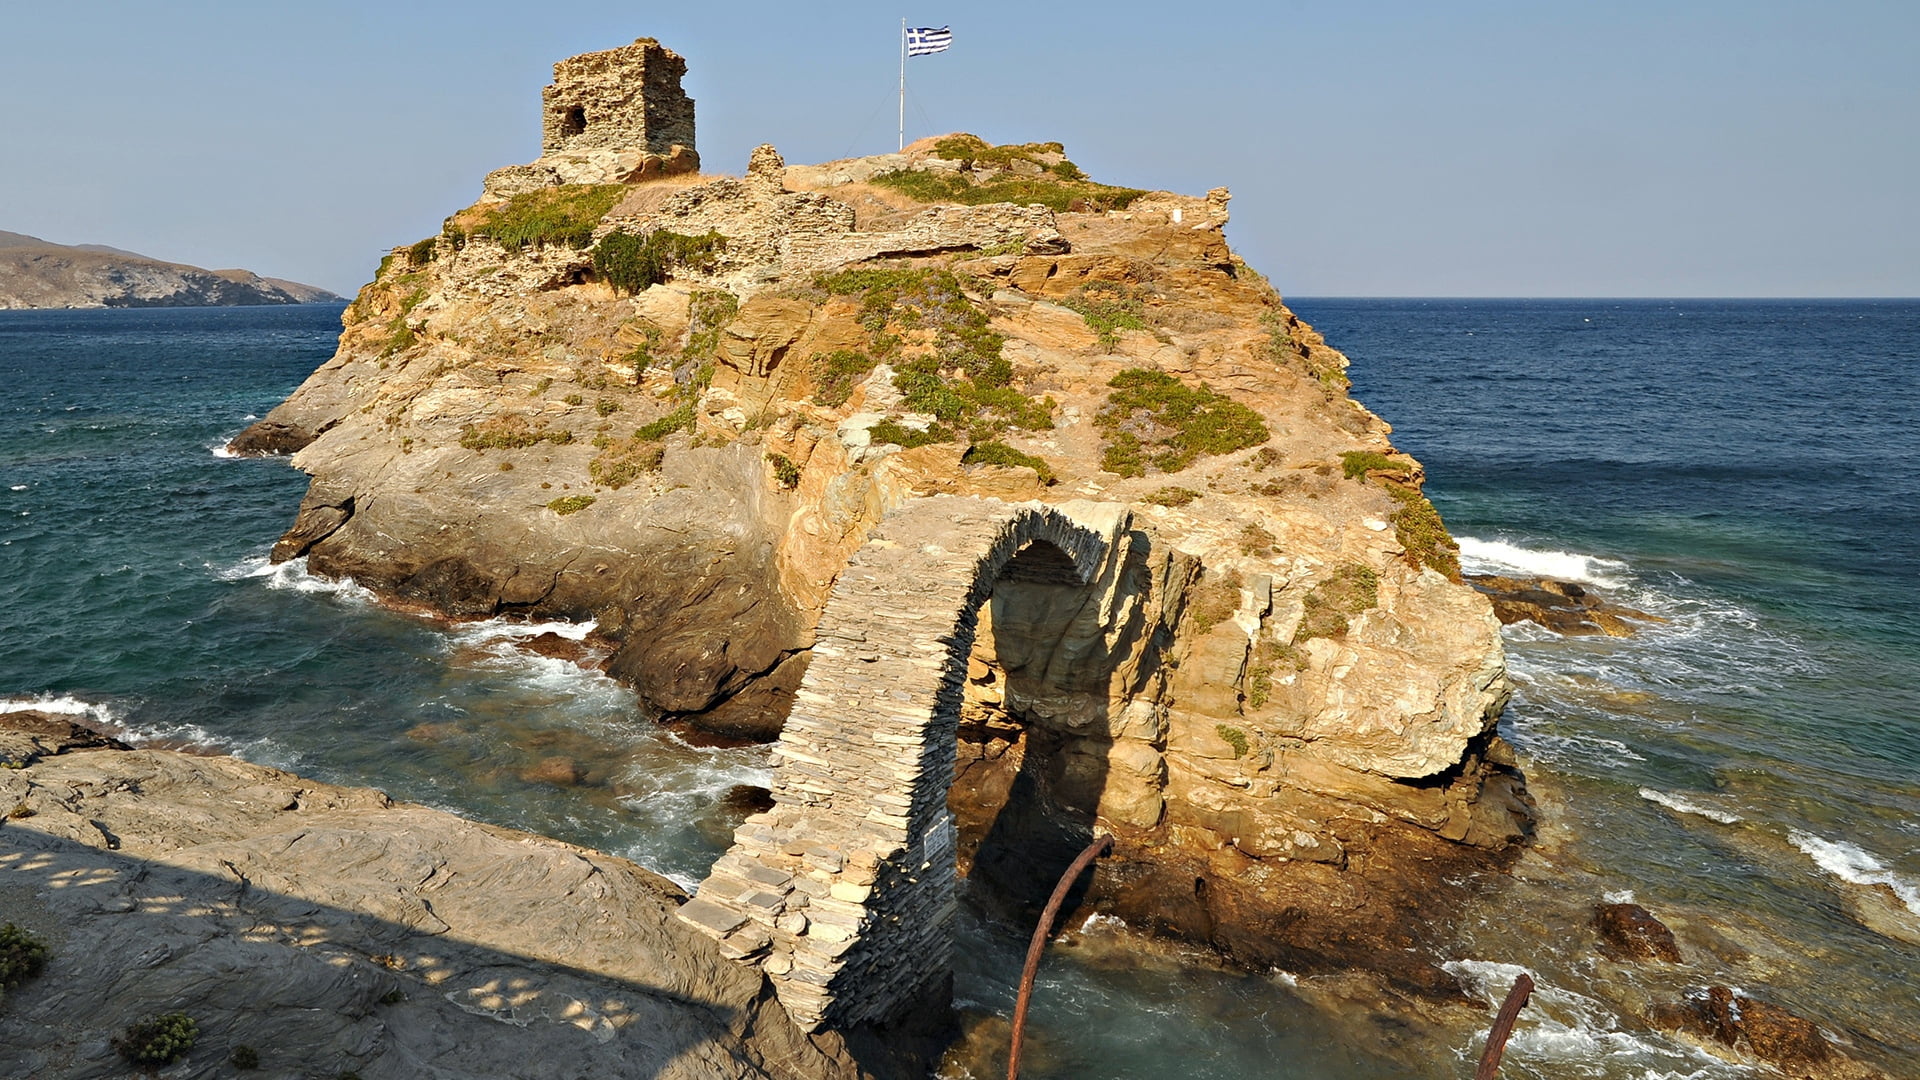 brown rock formation, greece, arch, flag, sea, coastline, cliff